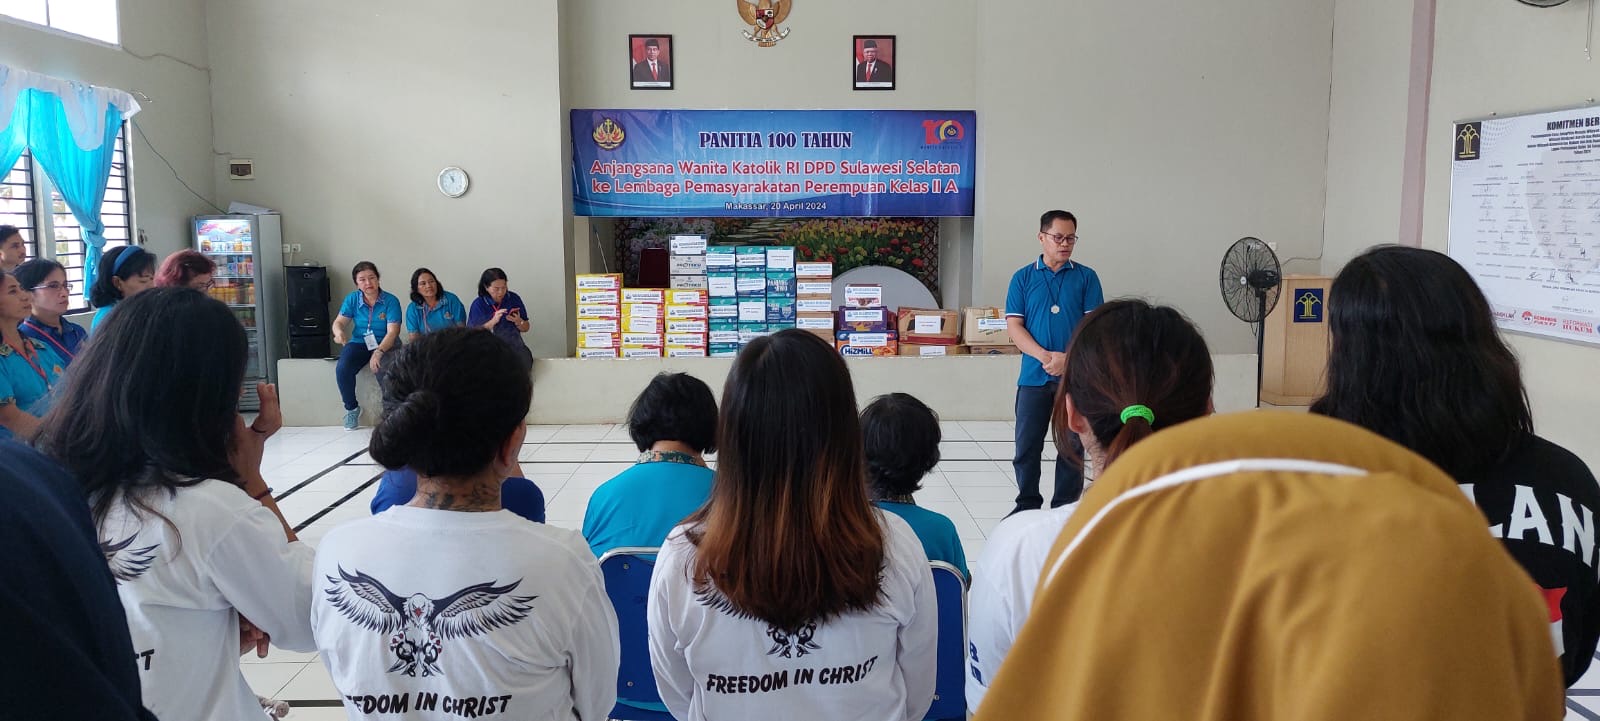 LPP Sungguminasa Terima Kunjungan Anjangsana Wanita Katolik RI DPD Sulawesi Selatan